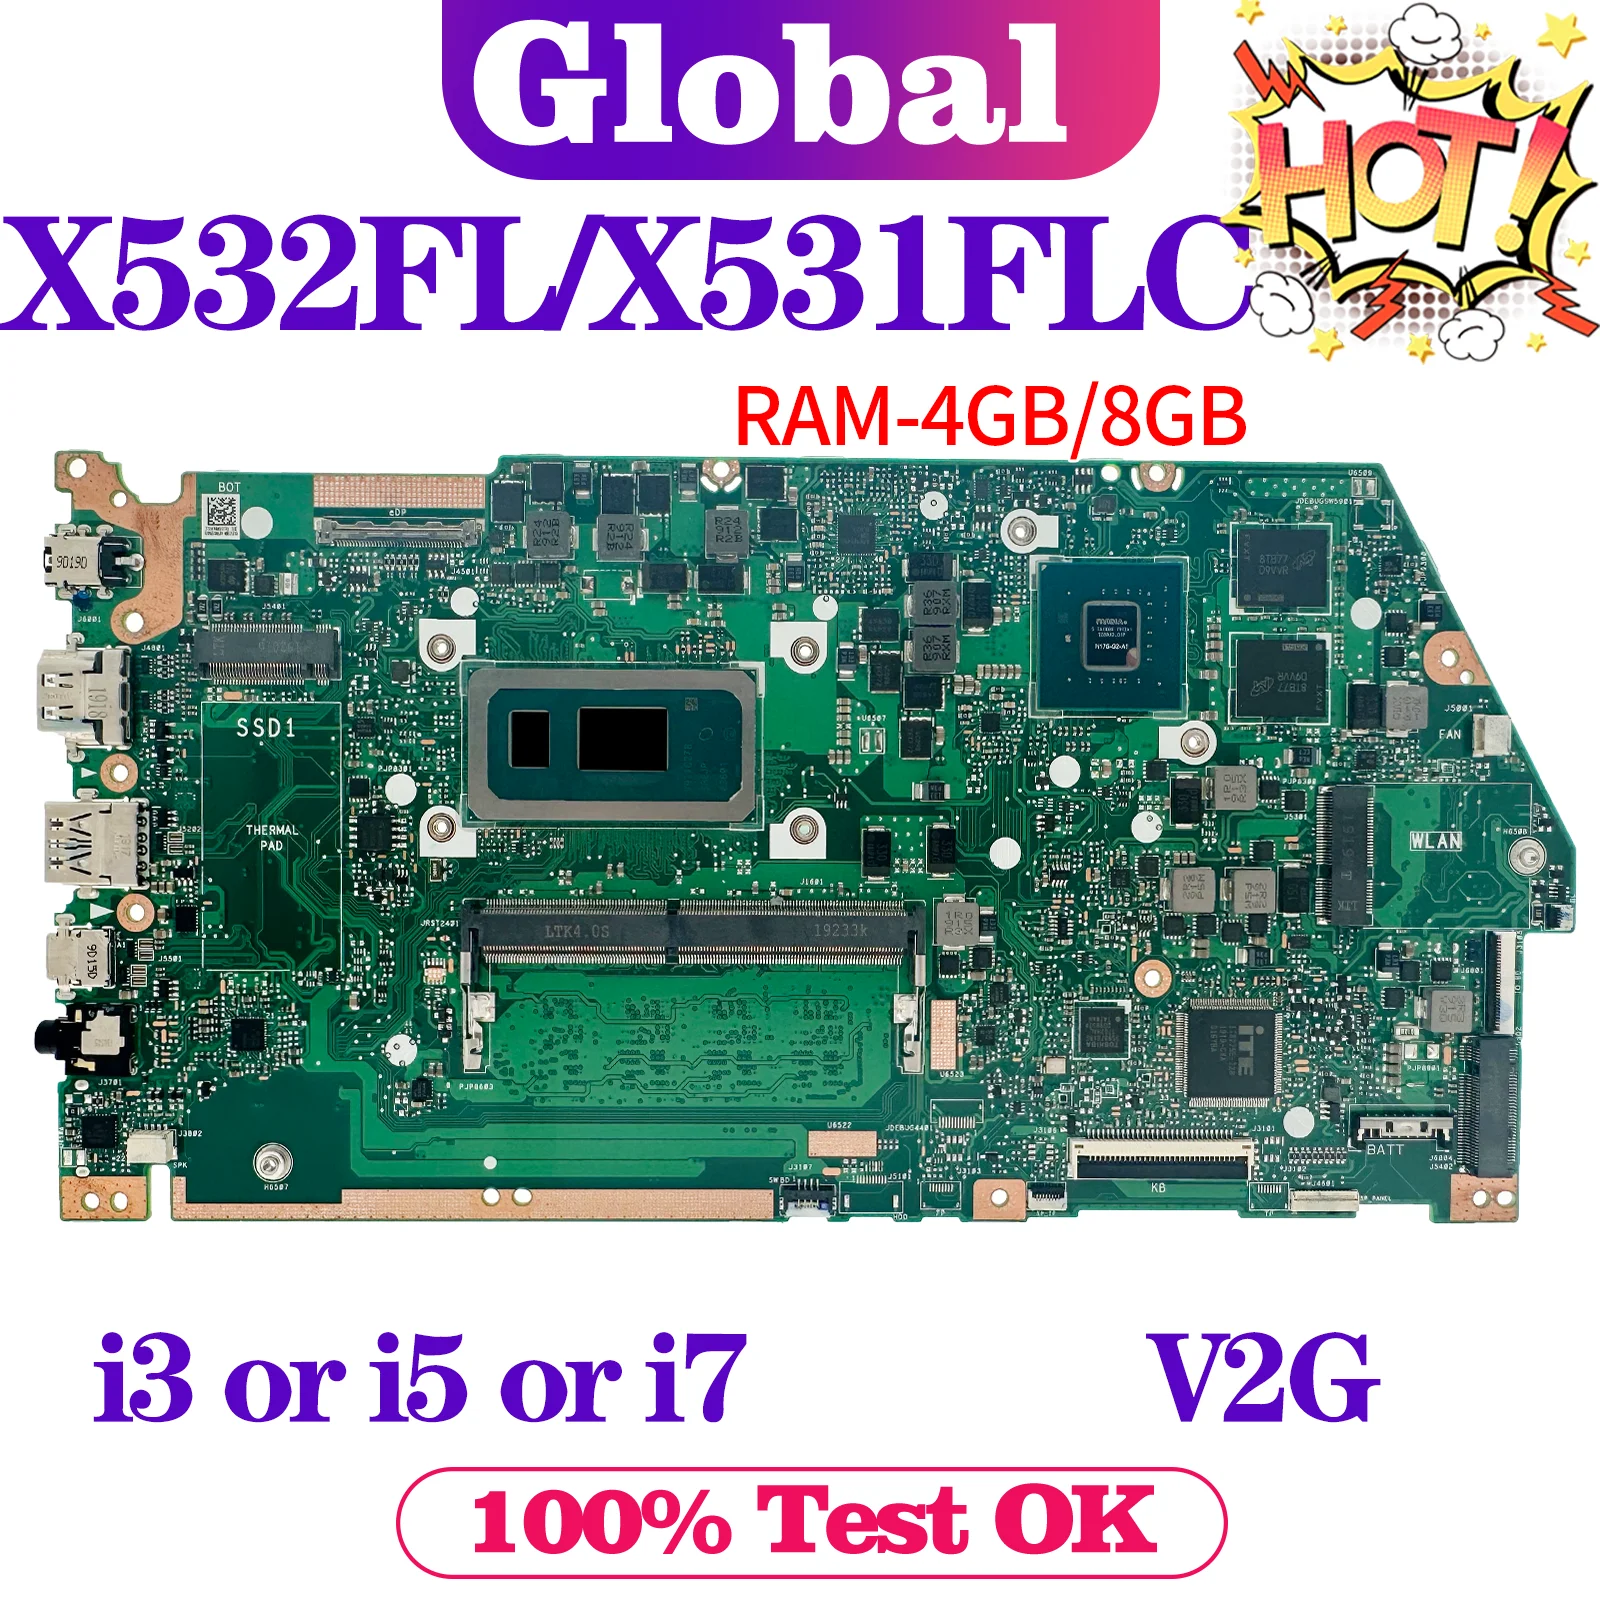 

X532FL X532FLC Mainboard For ASUS X531FL X532F X531F S531F K531F V531F S532F K532F V532F Laptop Motherboard i3 i5 i7 8th/10th